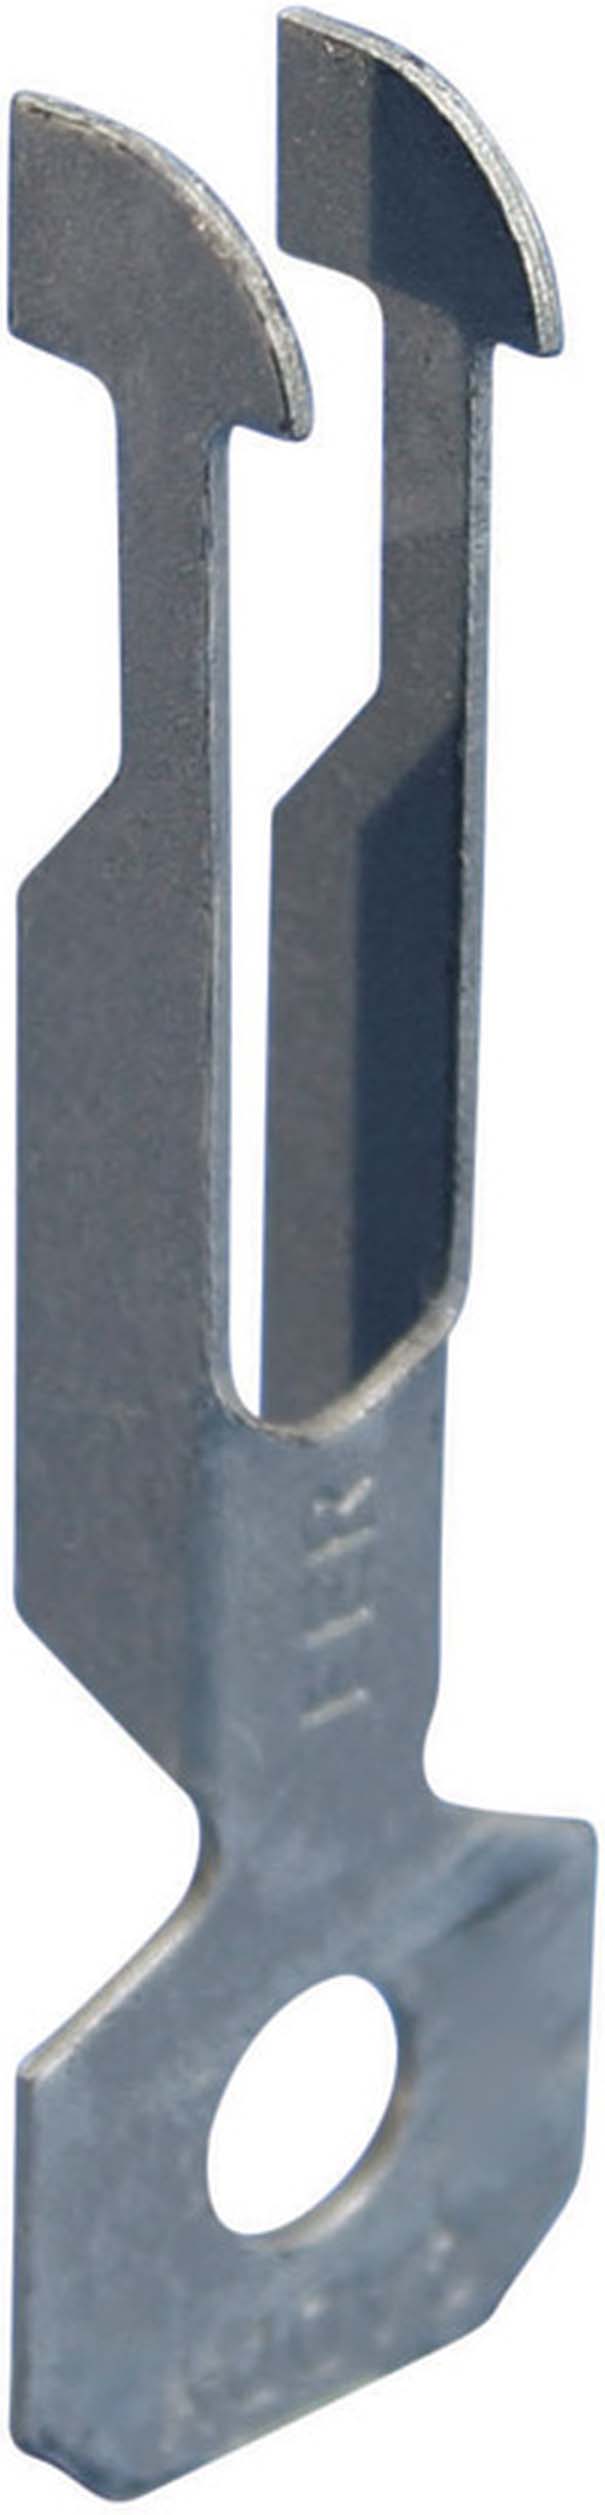 Erico Klammer P7 0,8-2mm 2-3mm EER